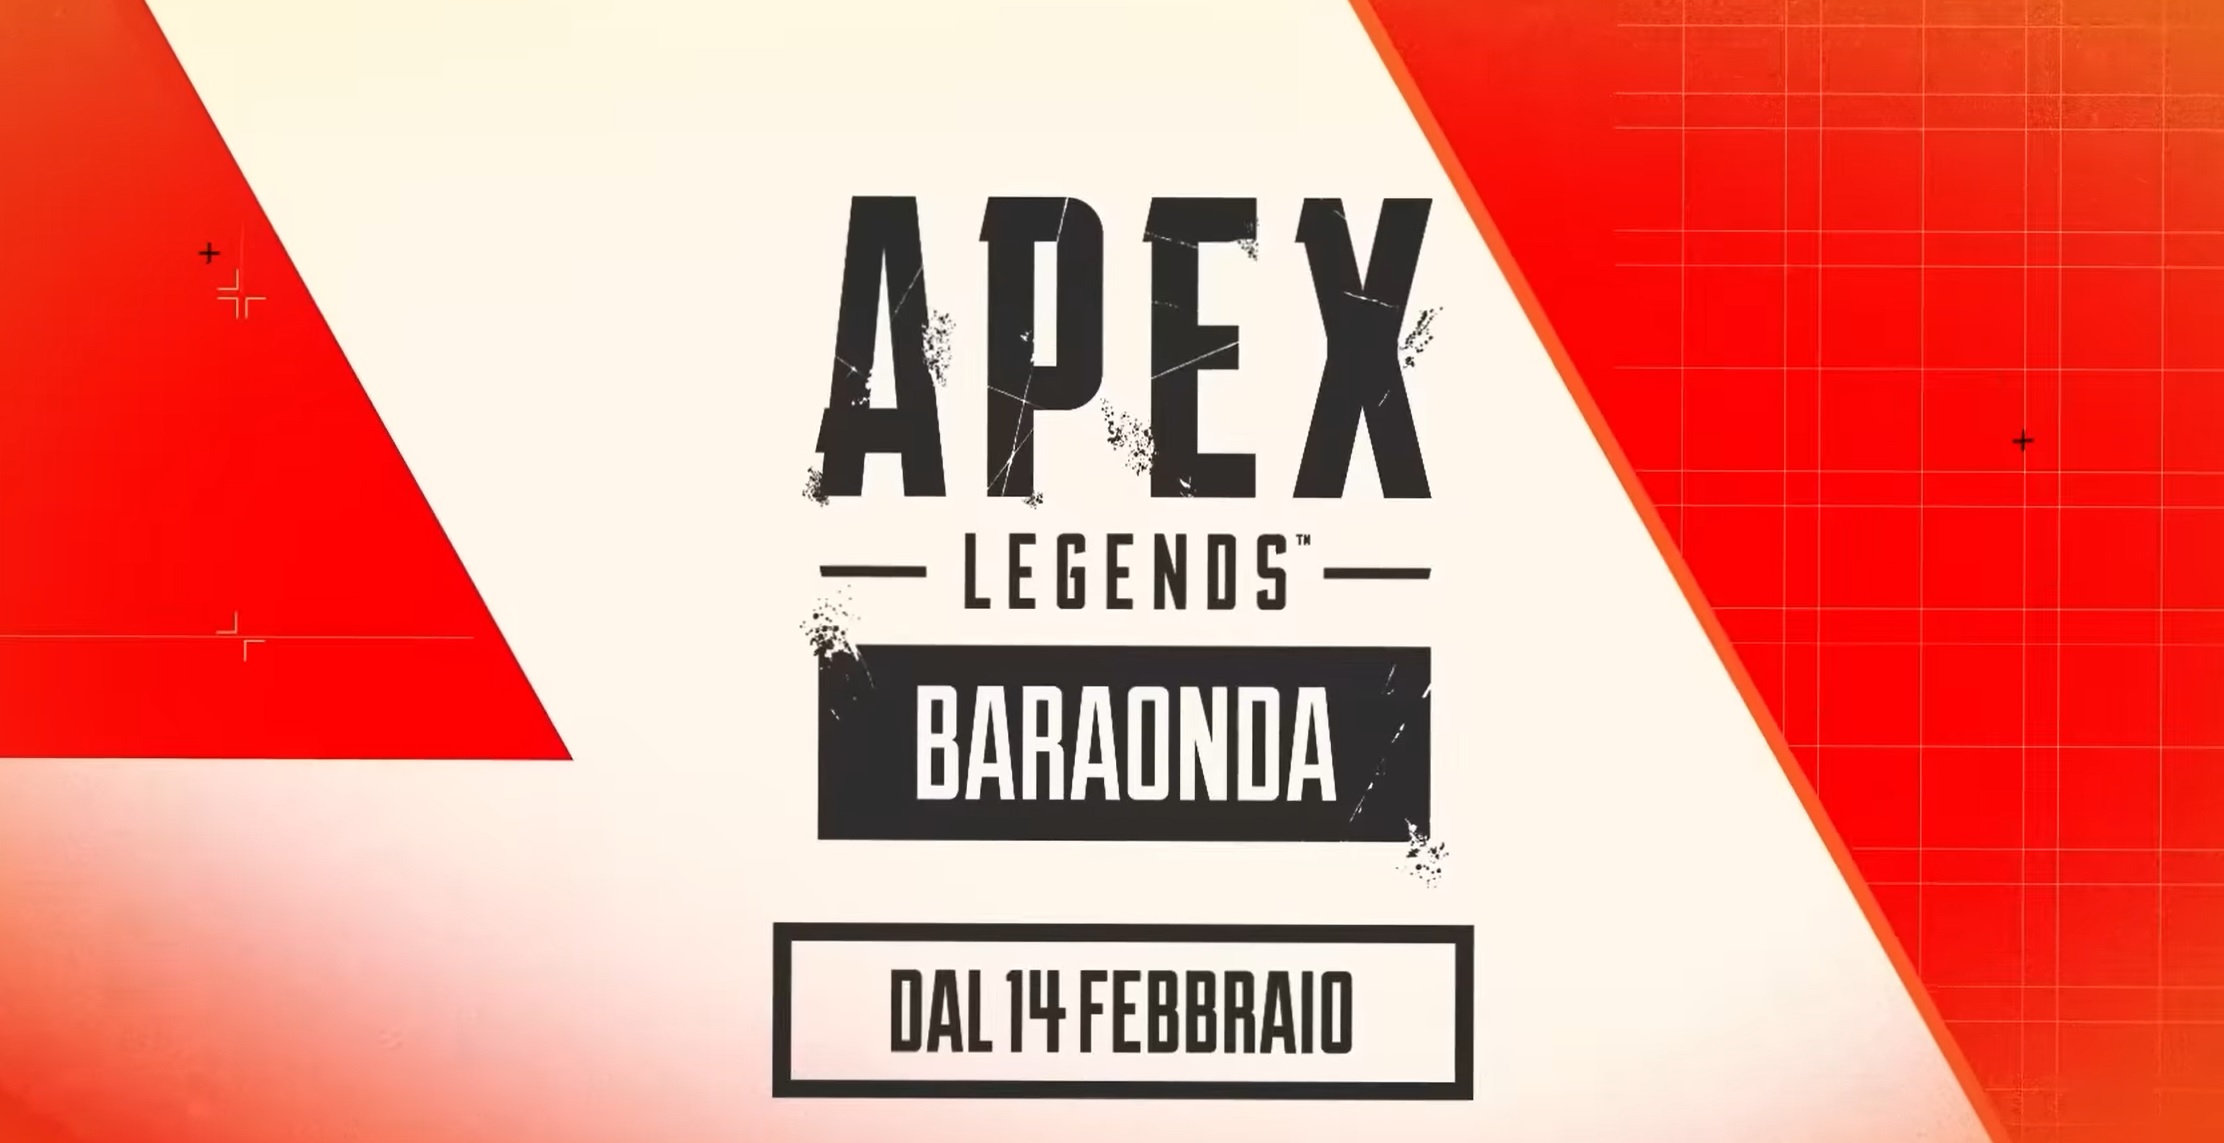 Apex Legends: Baraonda introduce le classi Leggenda revisionate, la modalità Deathmatch a squadre, l'arma Nemesis e molto altro ancora.